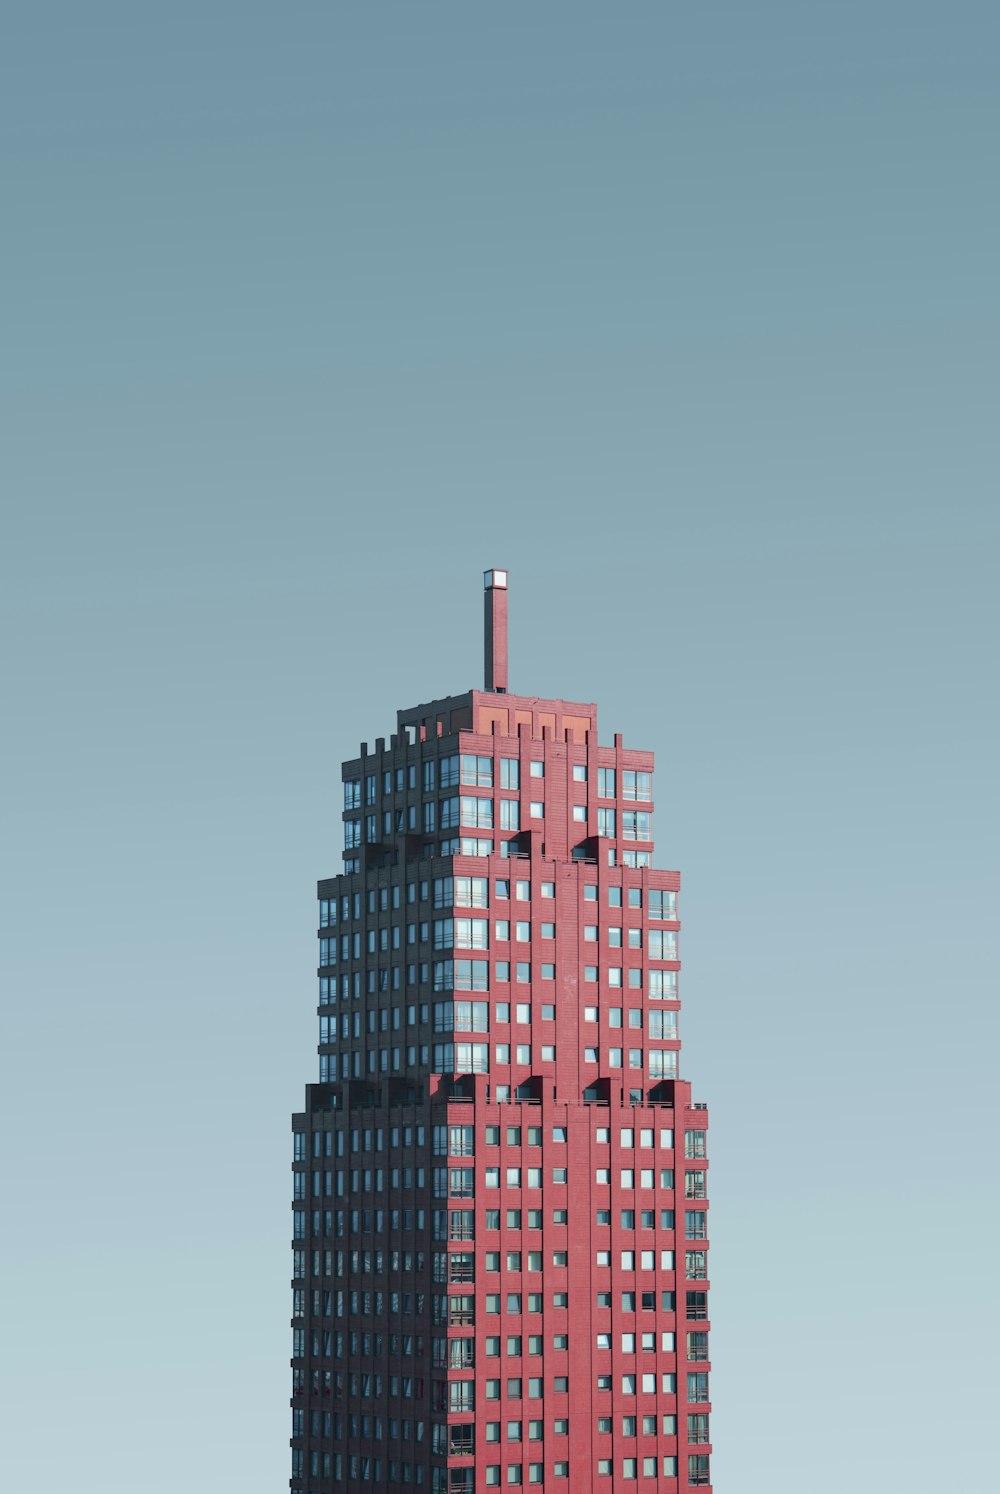 Fotografía aérea de edificios rojos y de cristal